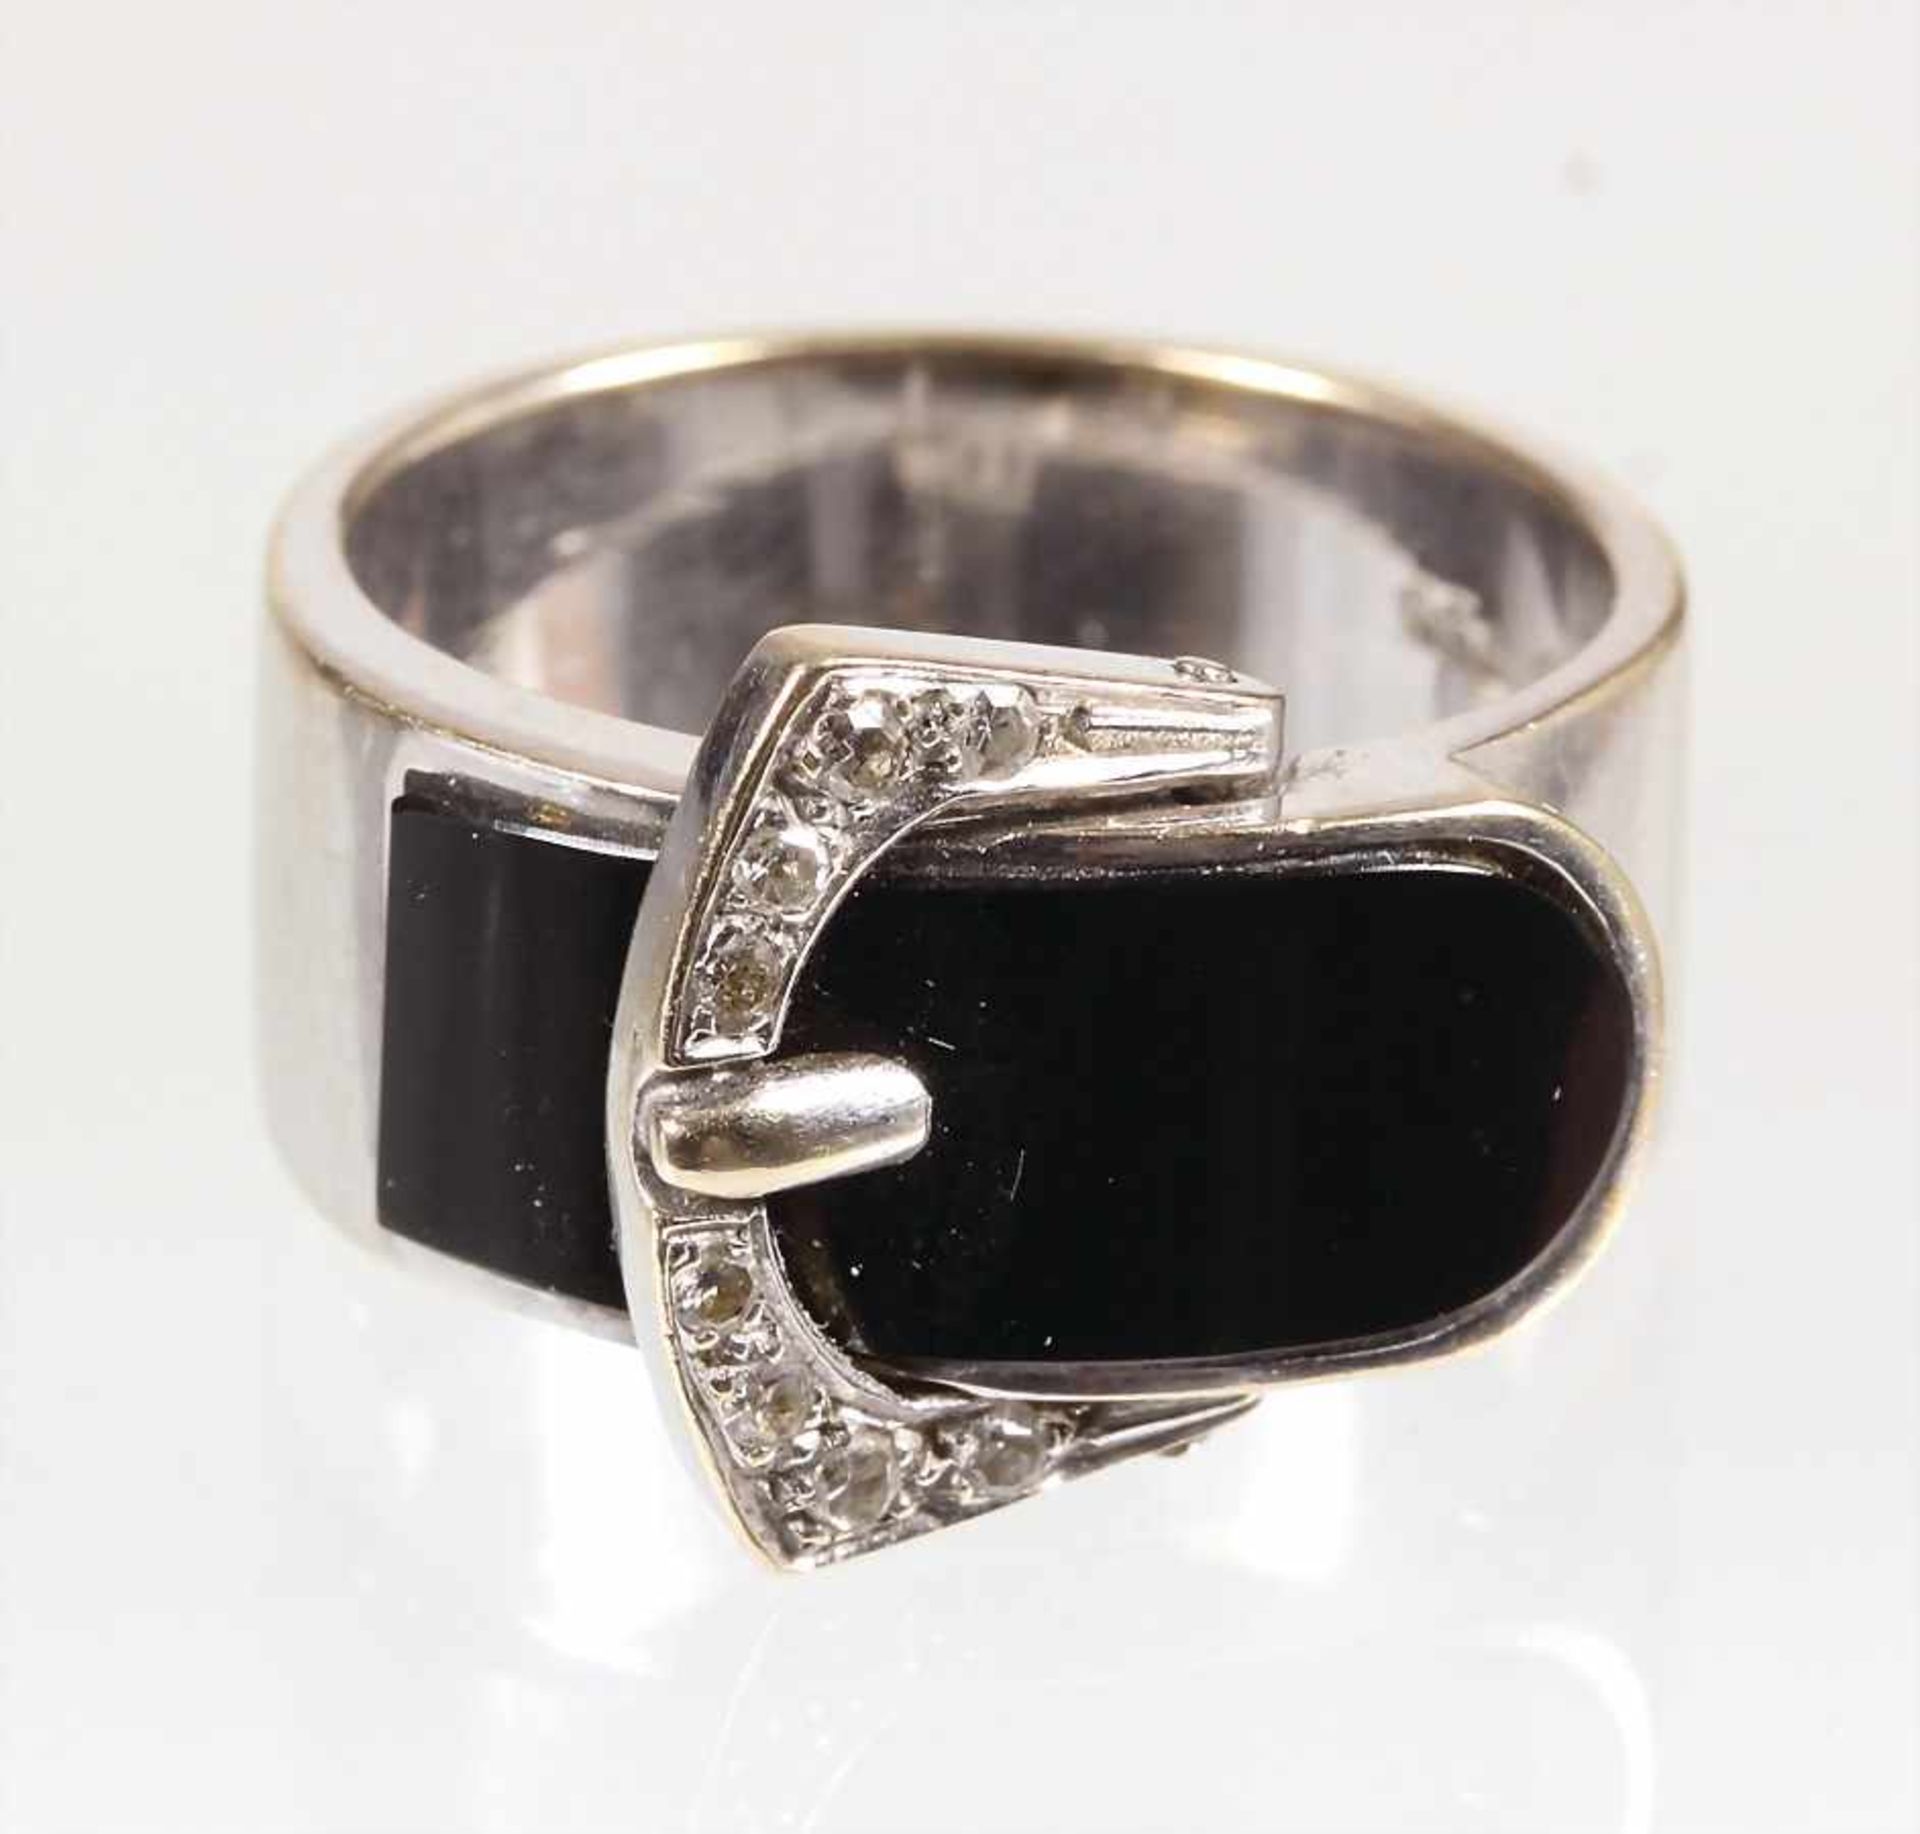 Ring VINTAGE, WG 750/000, sig.: rejo, 8 St. 8/8-kant Diamanten weiß, Onyxeinlage, Gürtelschnalle